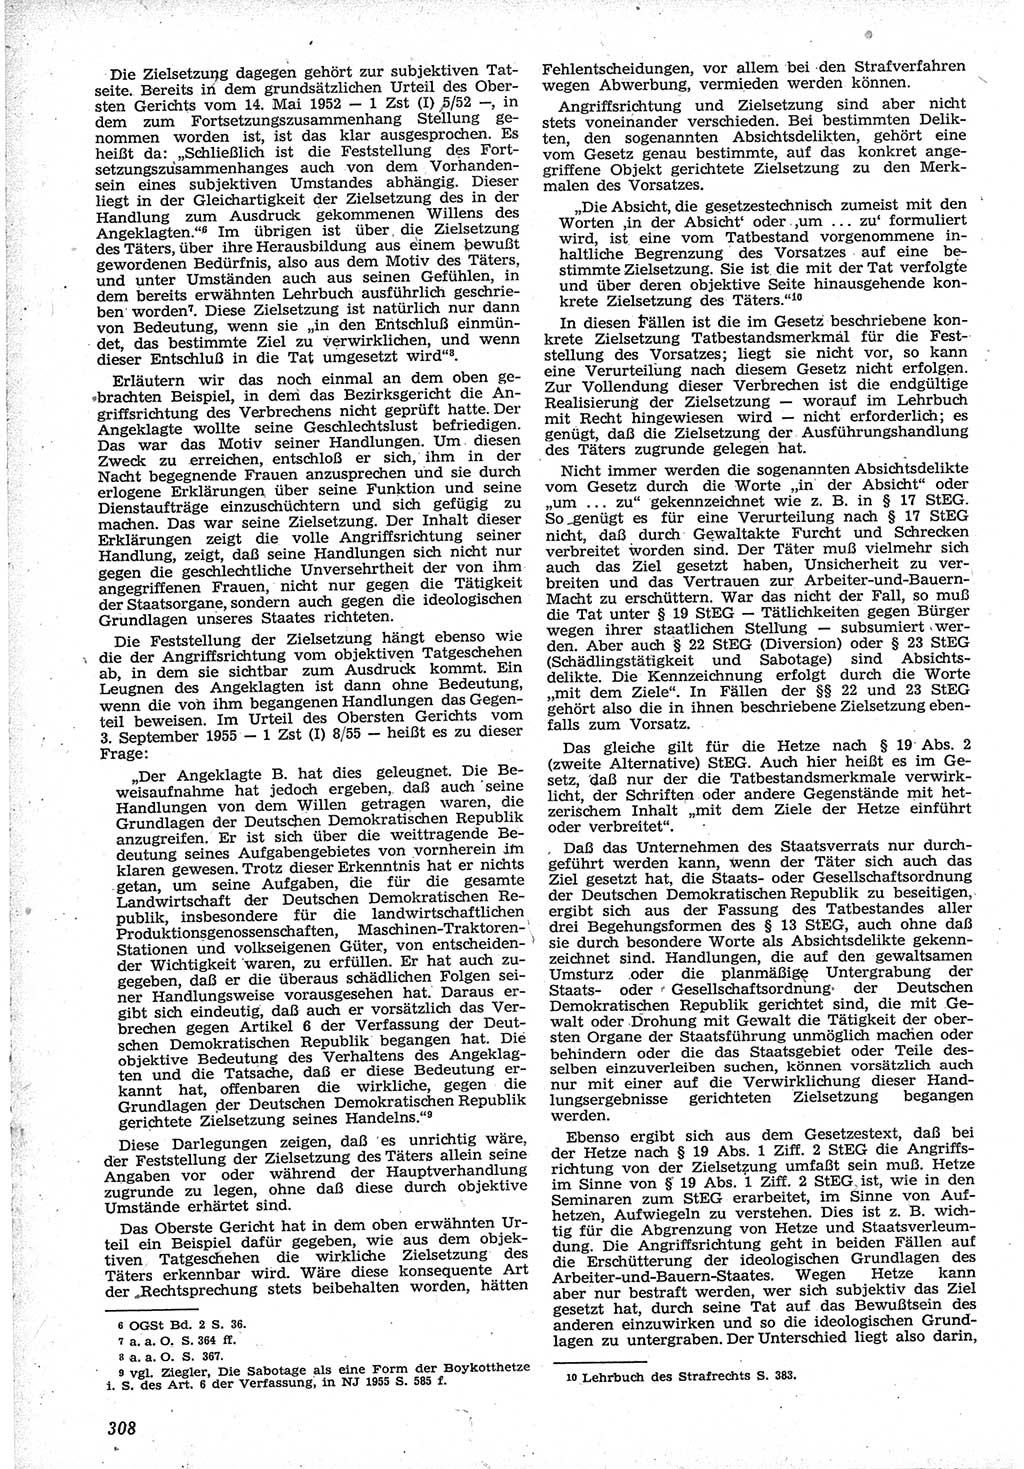 Neue Justiz (NJ), Zeitschrift für Recht und Rechtswissenschaft [Deutsche Demokratische Republik (DDR)], 12. Jahrgang 1958, Seite 308 (NJ DDR 1958, S. 308)